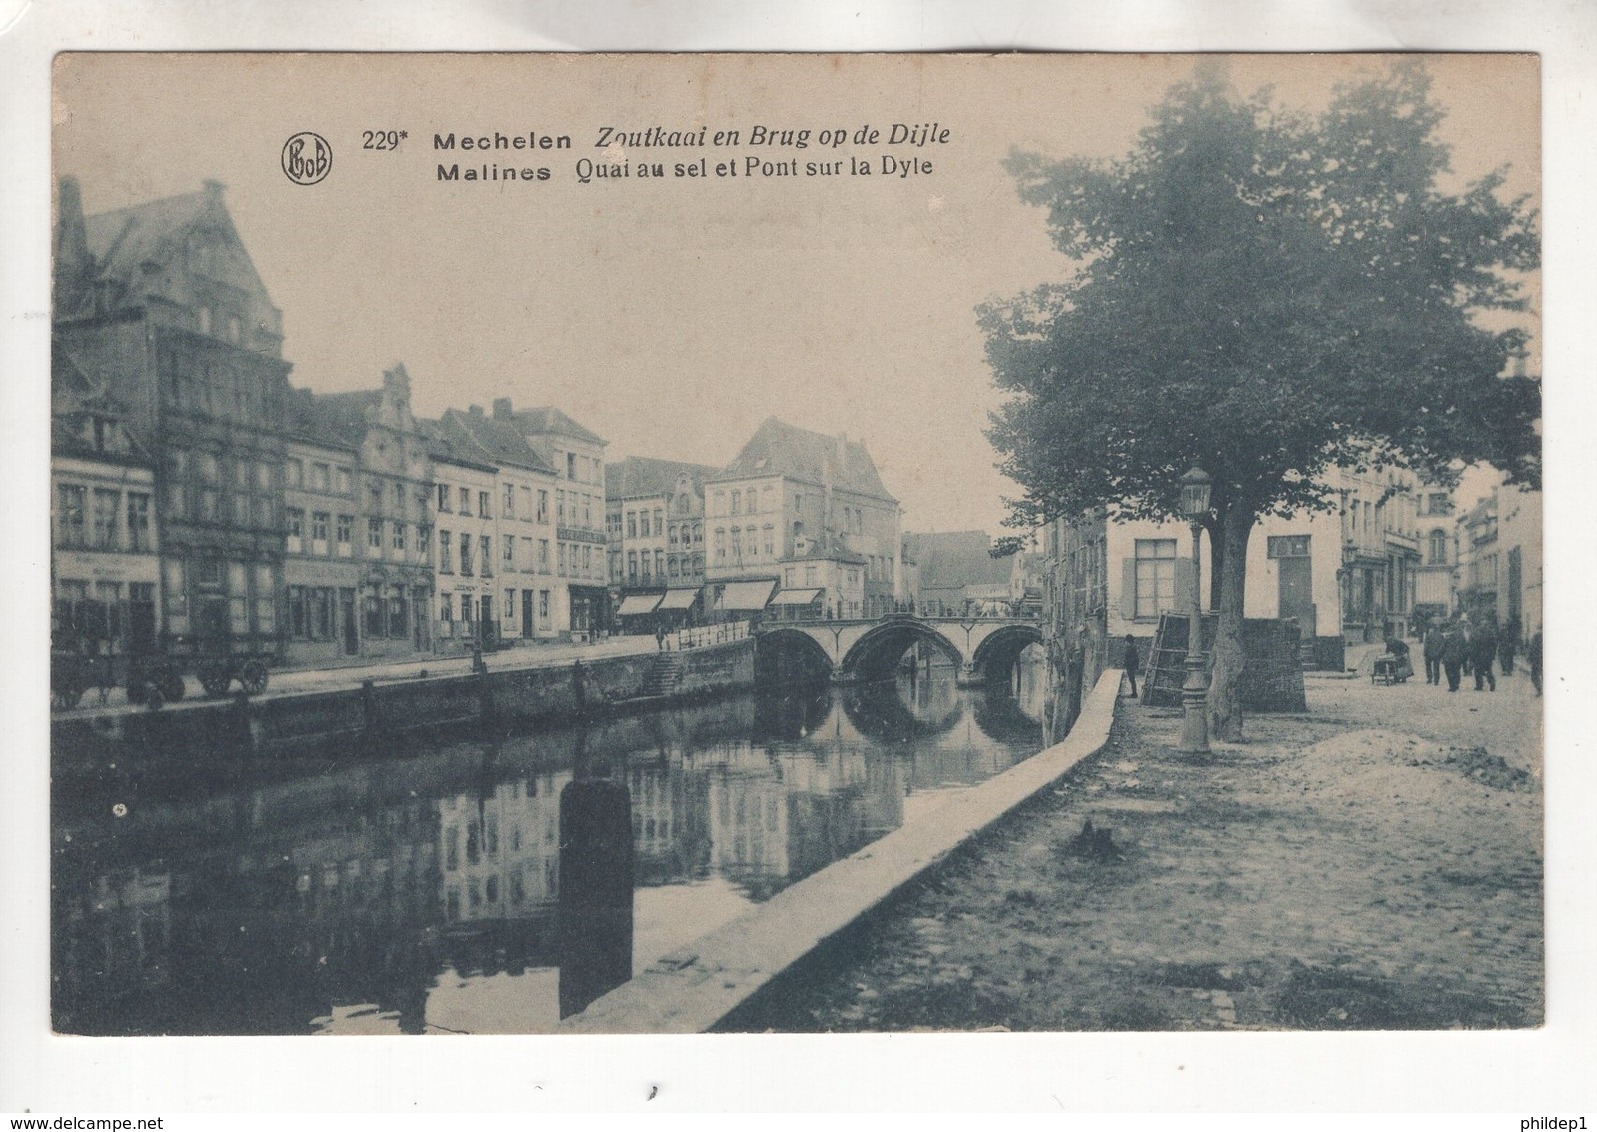 Malines: Quai Au Sel Et Pont Sur La Dyle. Mechelen: Zoutkaai En Brug Op De Dijle - Malines